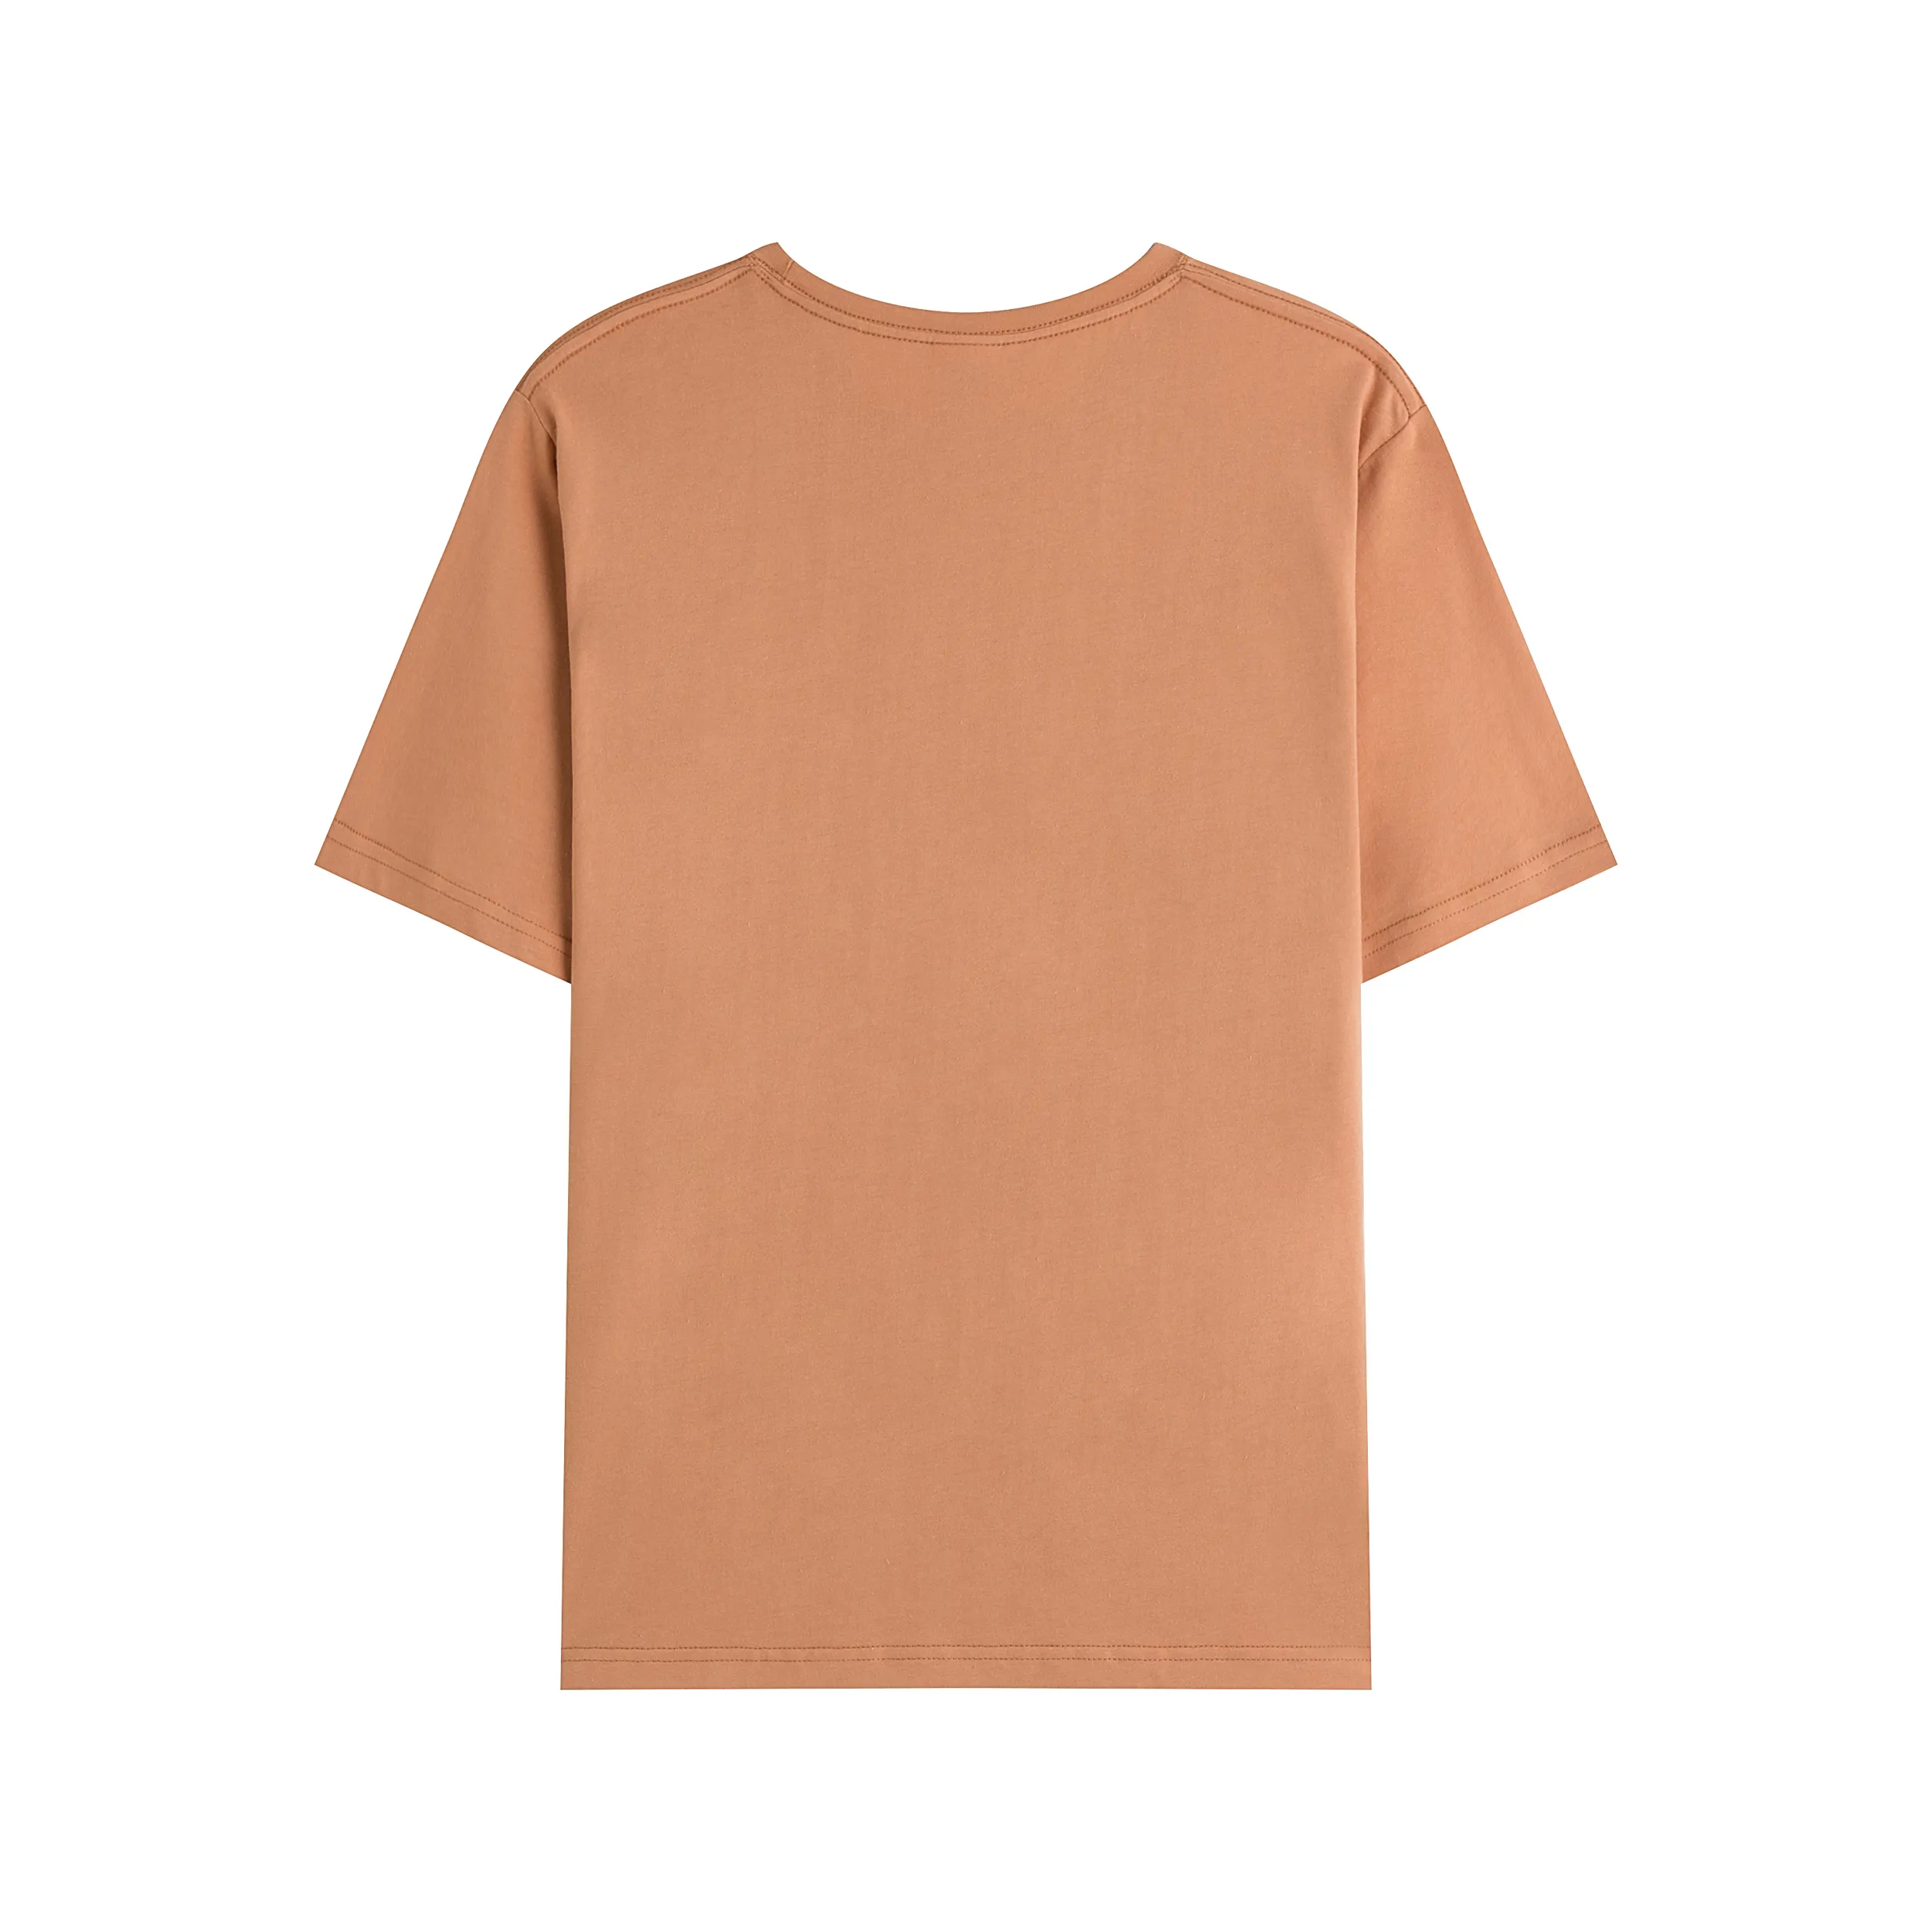 Custom logo fashion tshirt 100% cotton men summer t-shirt high quality embroidery t shirt